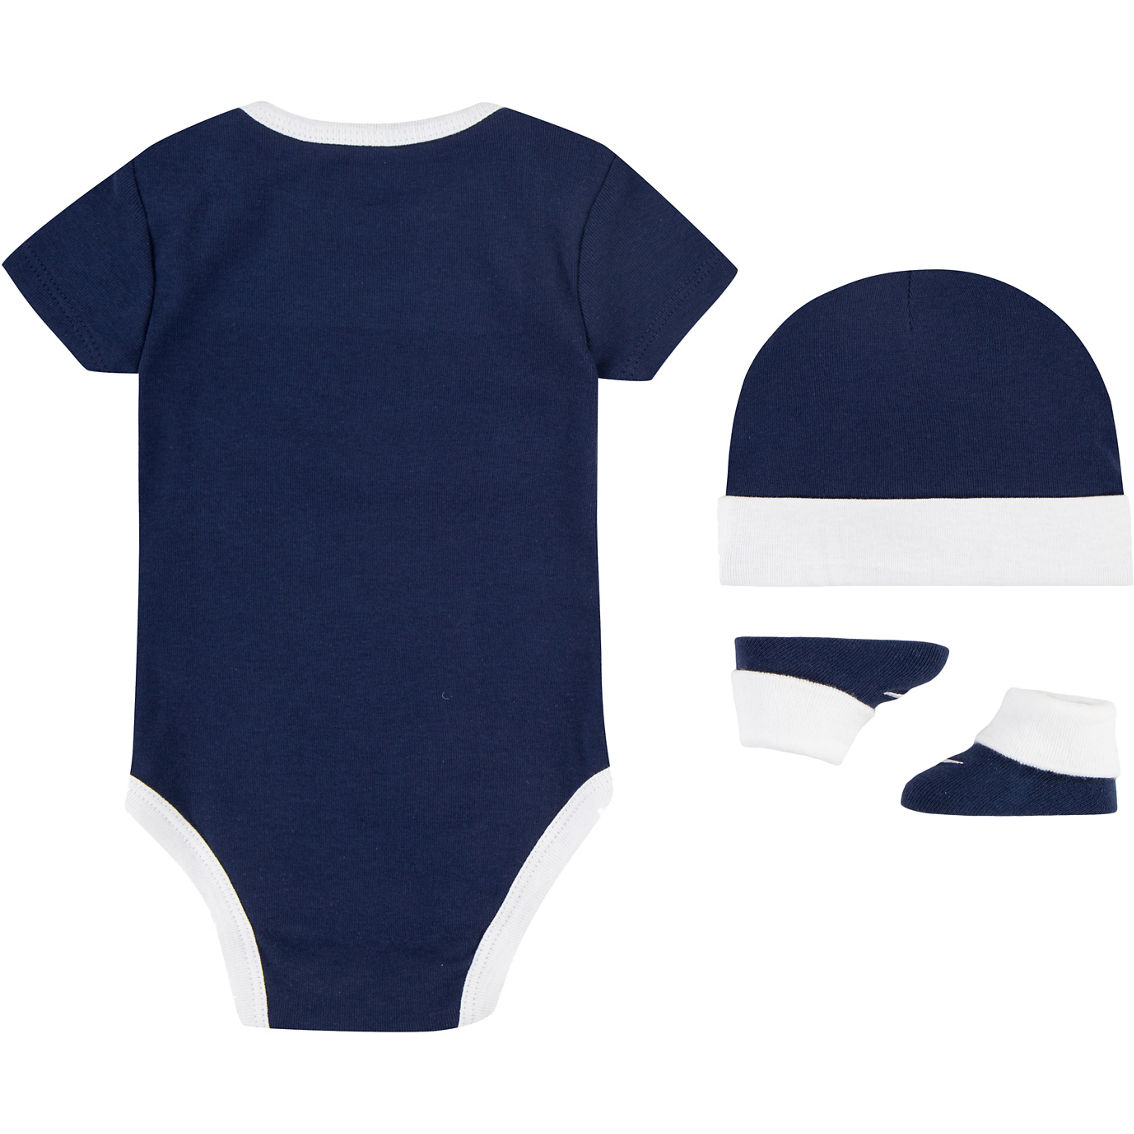 Nike Infant Boys Swoosh 3 Pc. Box Set | Baby Boy 0-24 Months | Clothing ...